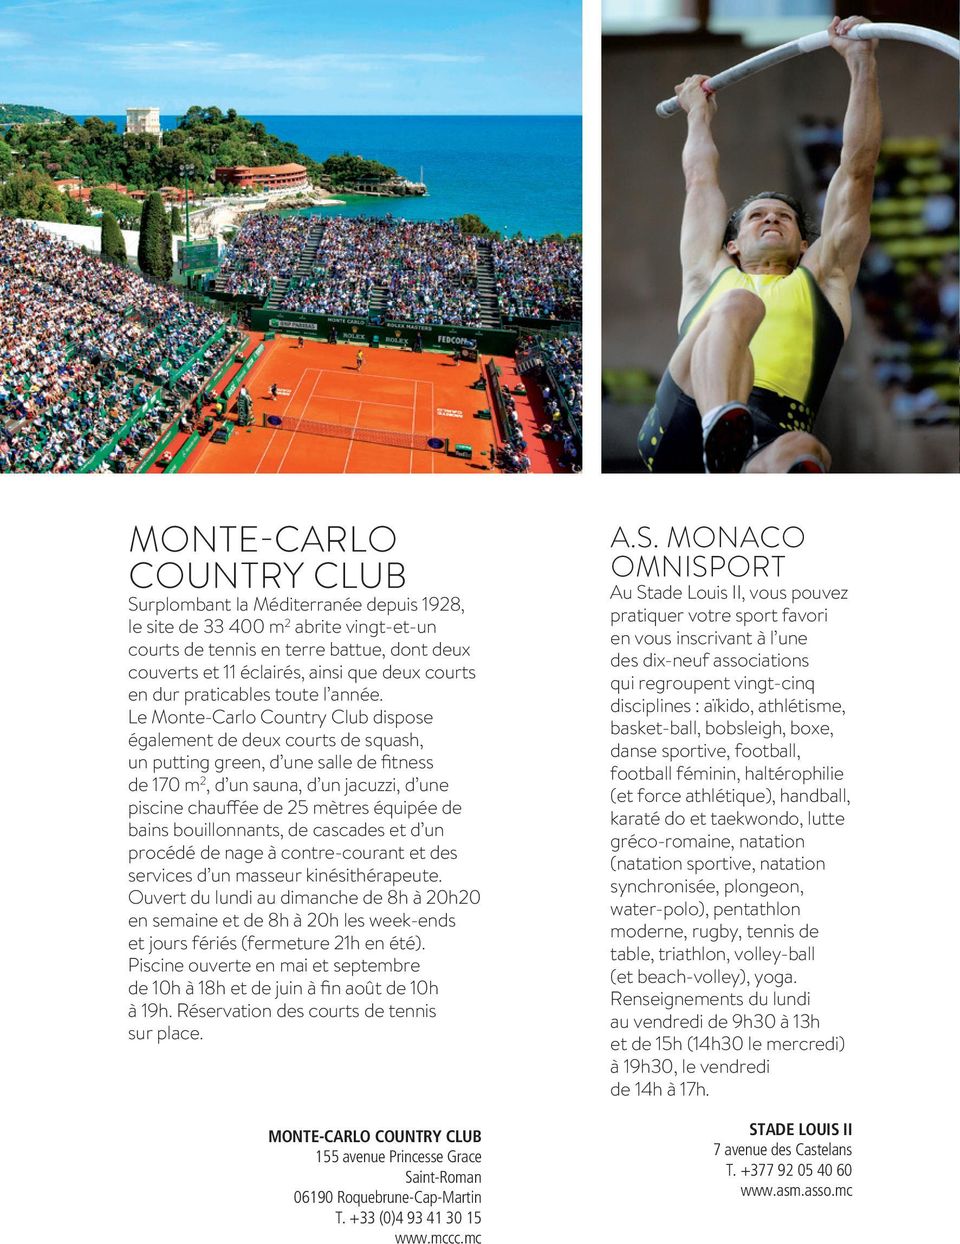 Le Monte-Carlo Country Club dispose également de deux courts de squash, un putting green, d une salle de fitness de 170 m 2, d un sauna, d un jacuzzi, d une piscine chauffée de 25 mètres équipée de